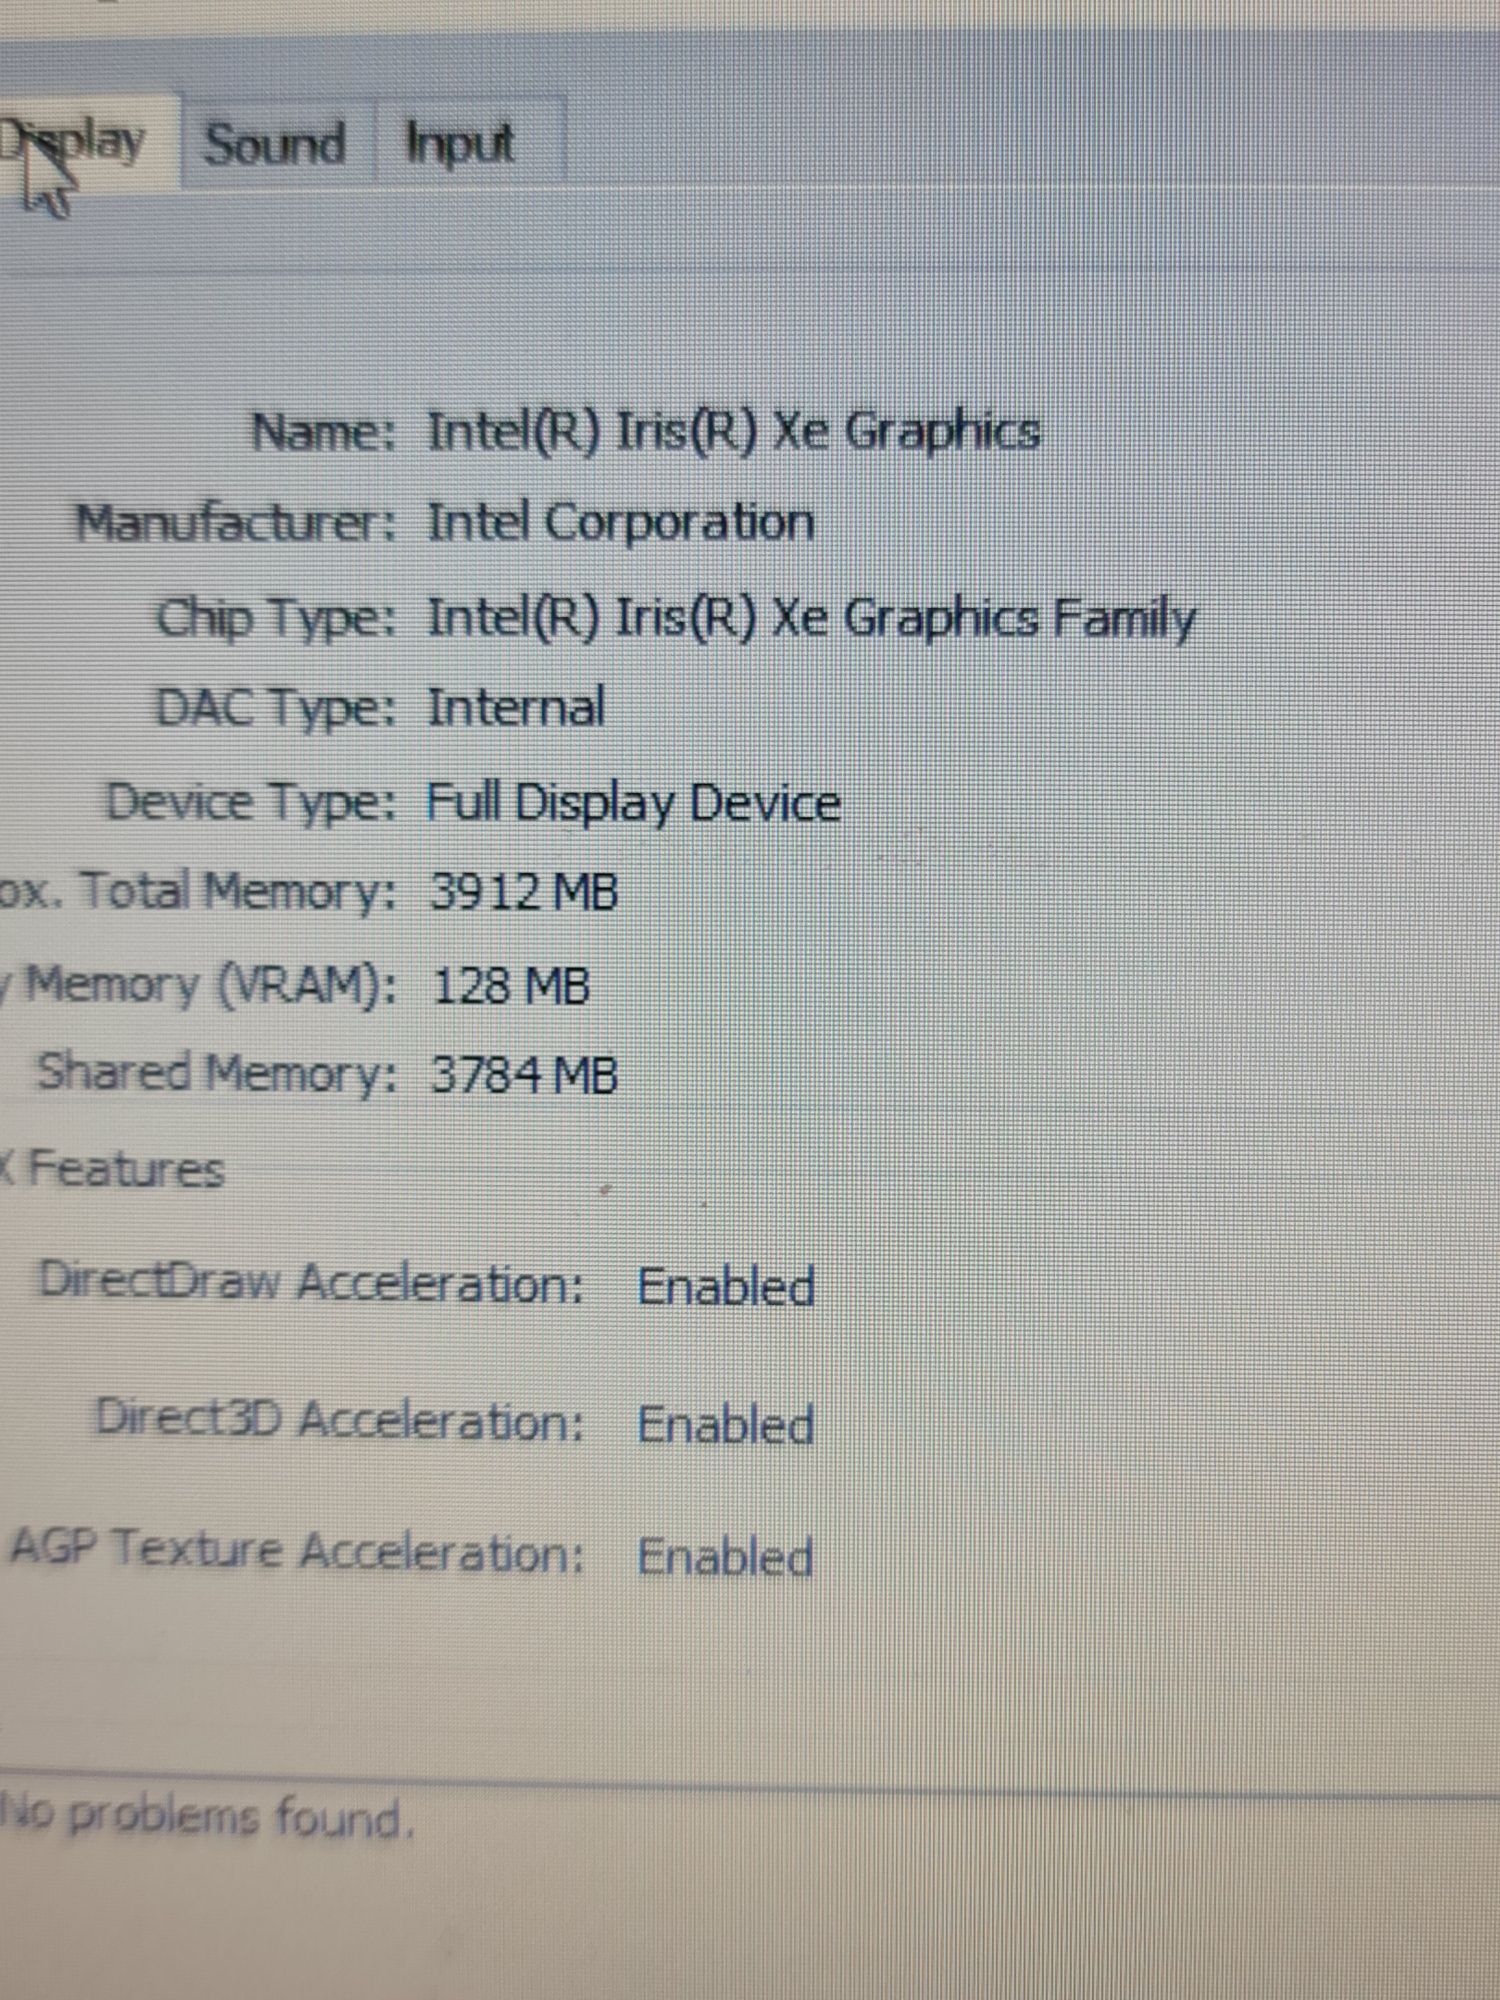 Laptop Dell 5420 cu i5 generatia 11